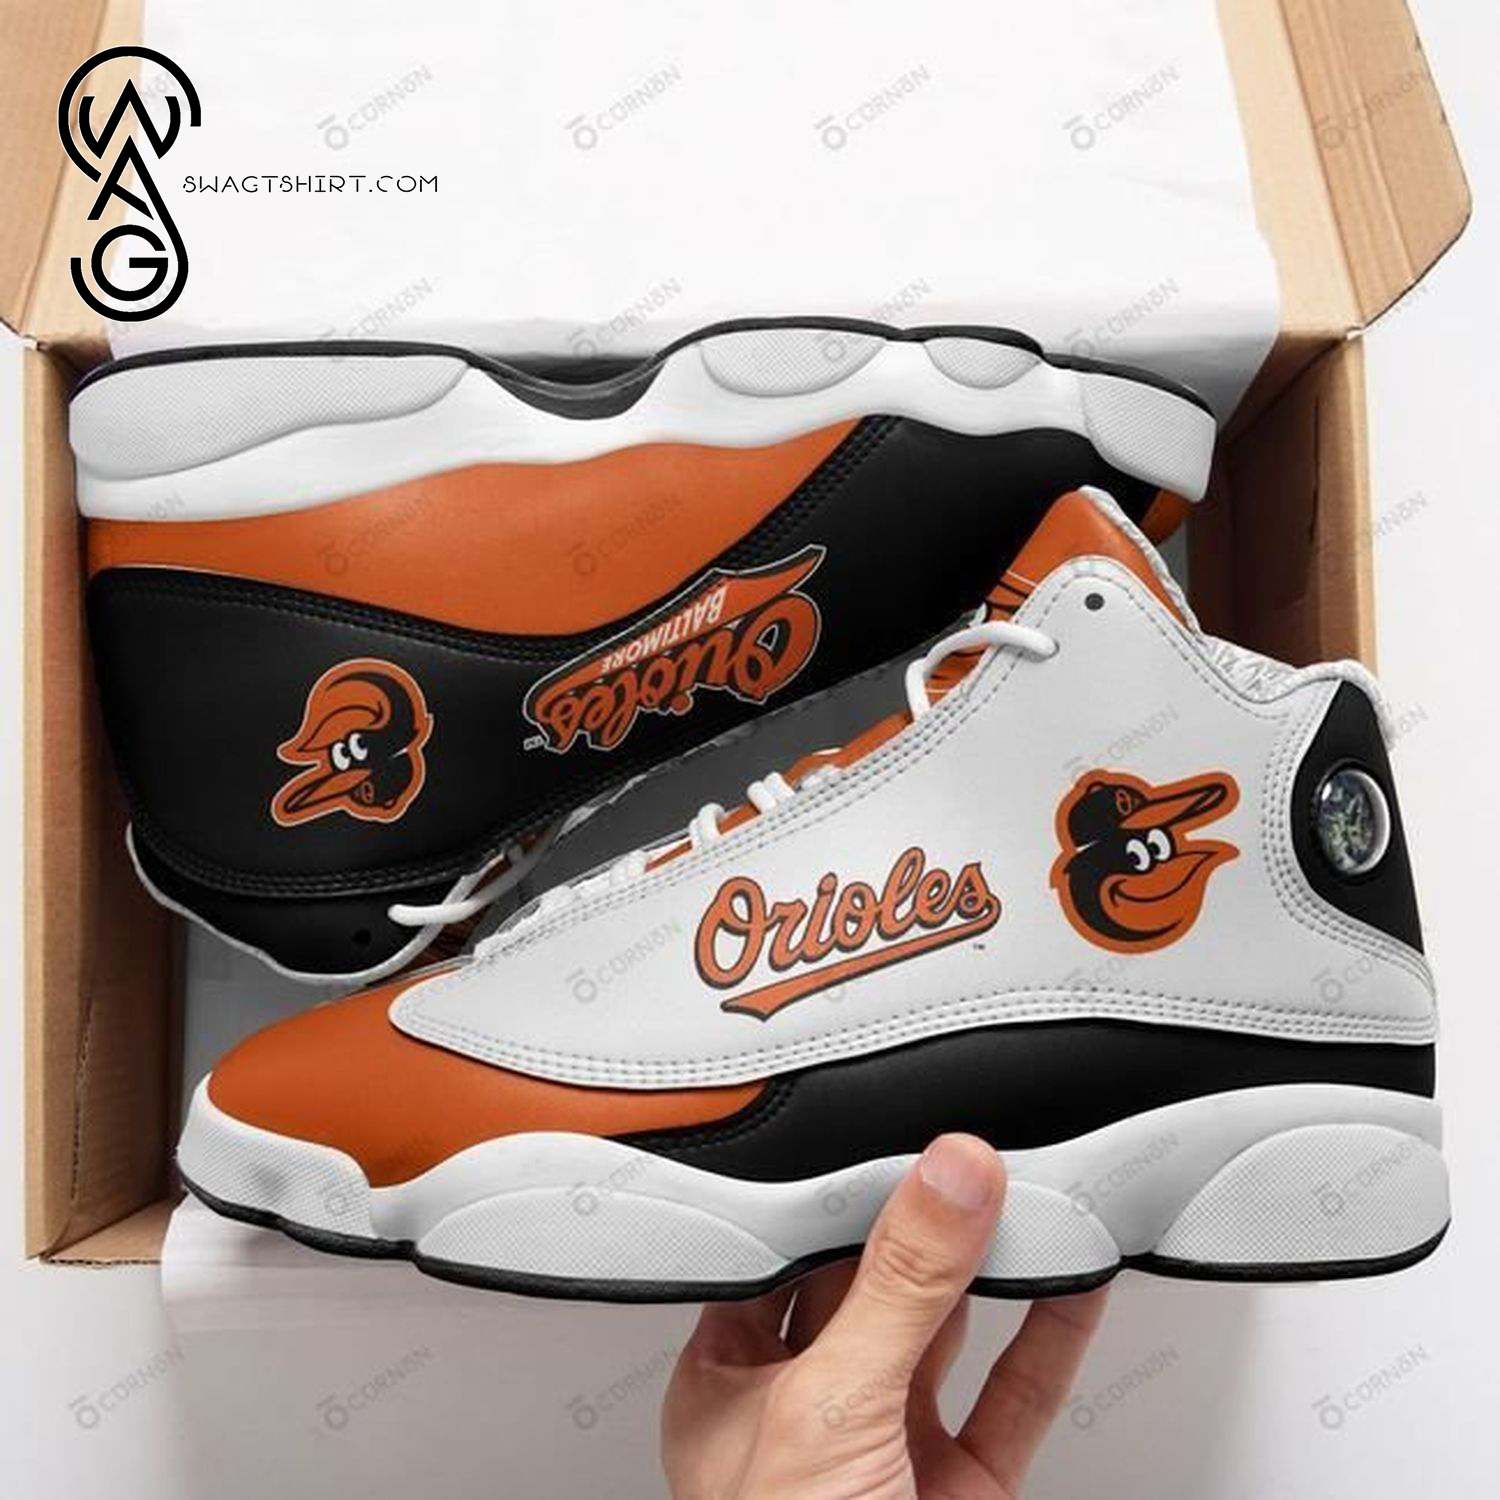 MLB Baltimore Orioles Air Jordan 13 Shoes